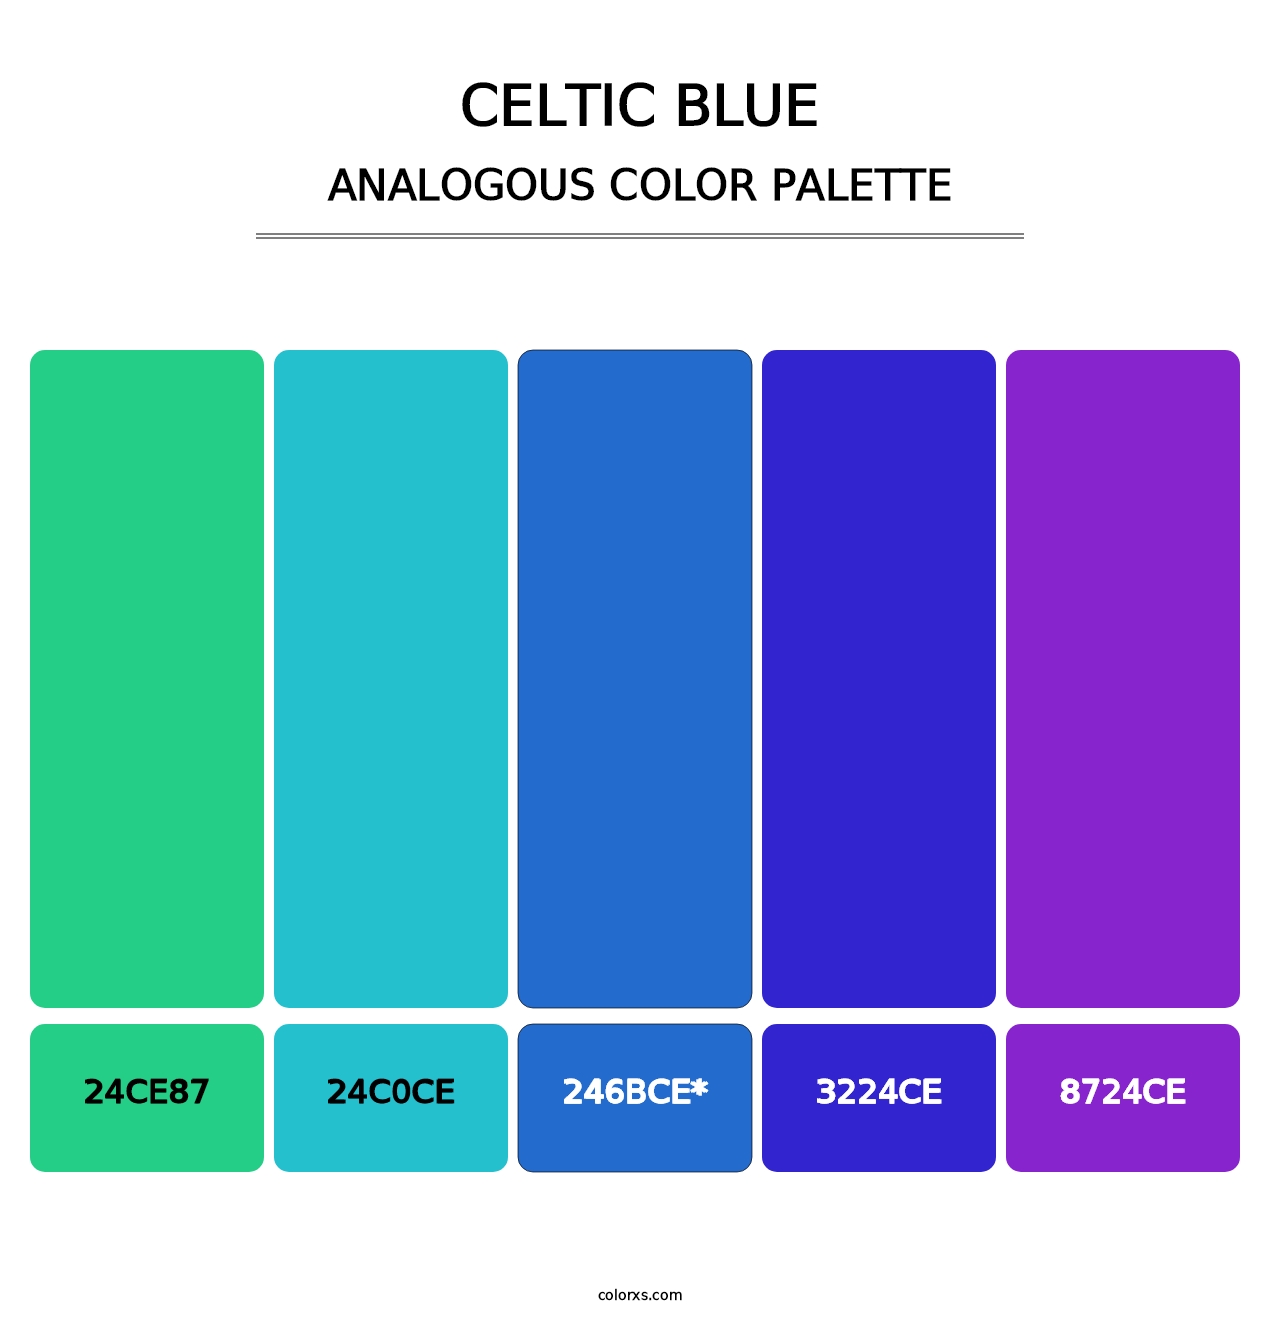 Celtic Blue - Analogous Color Palette